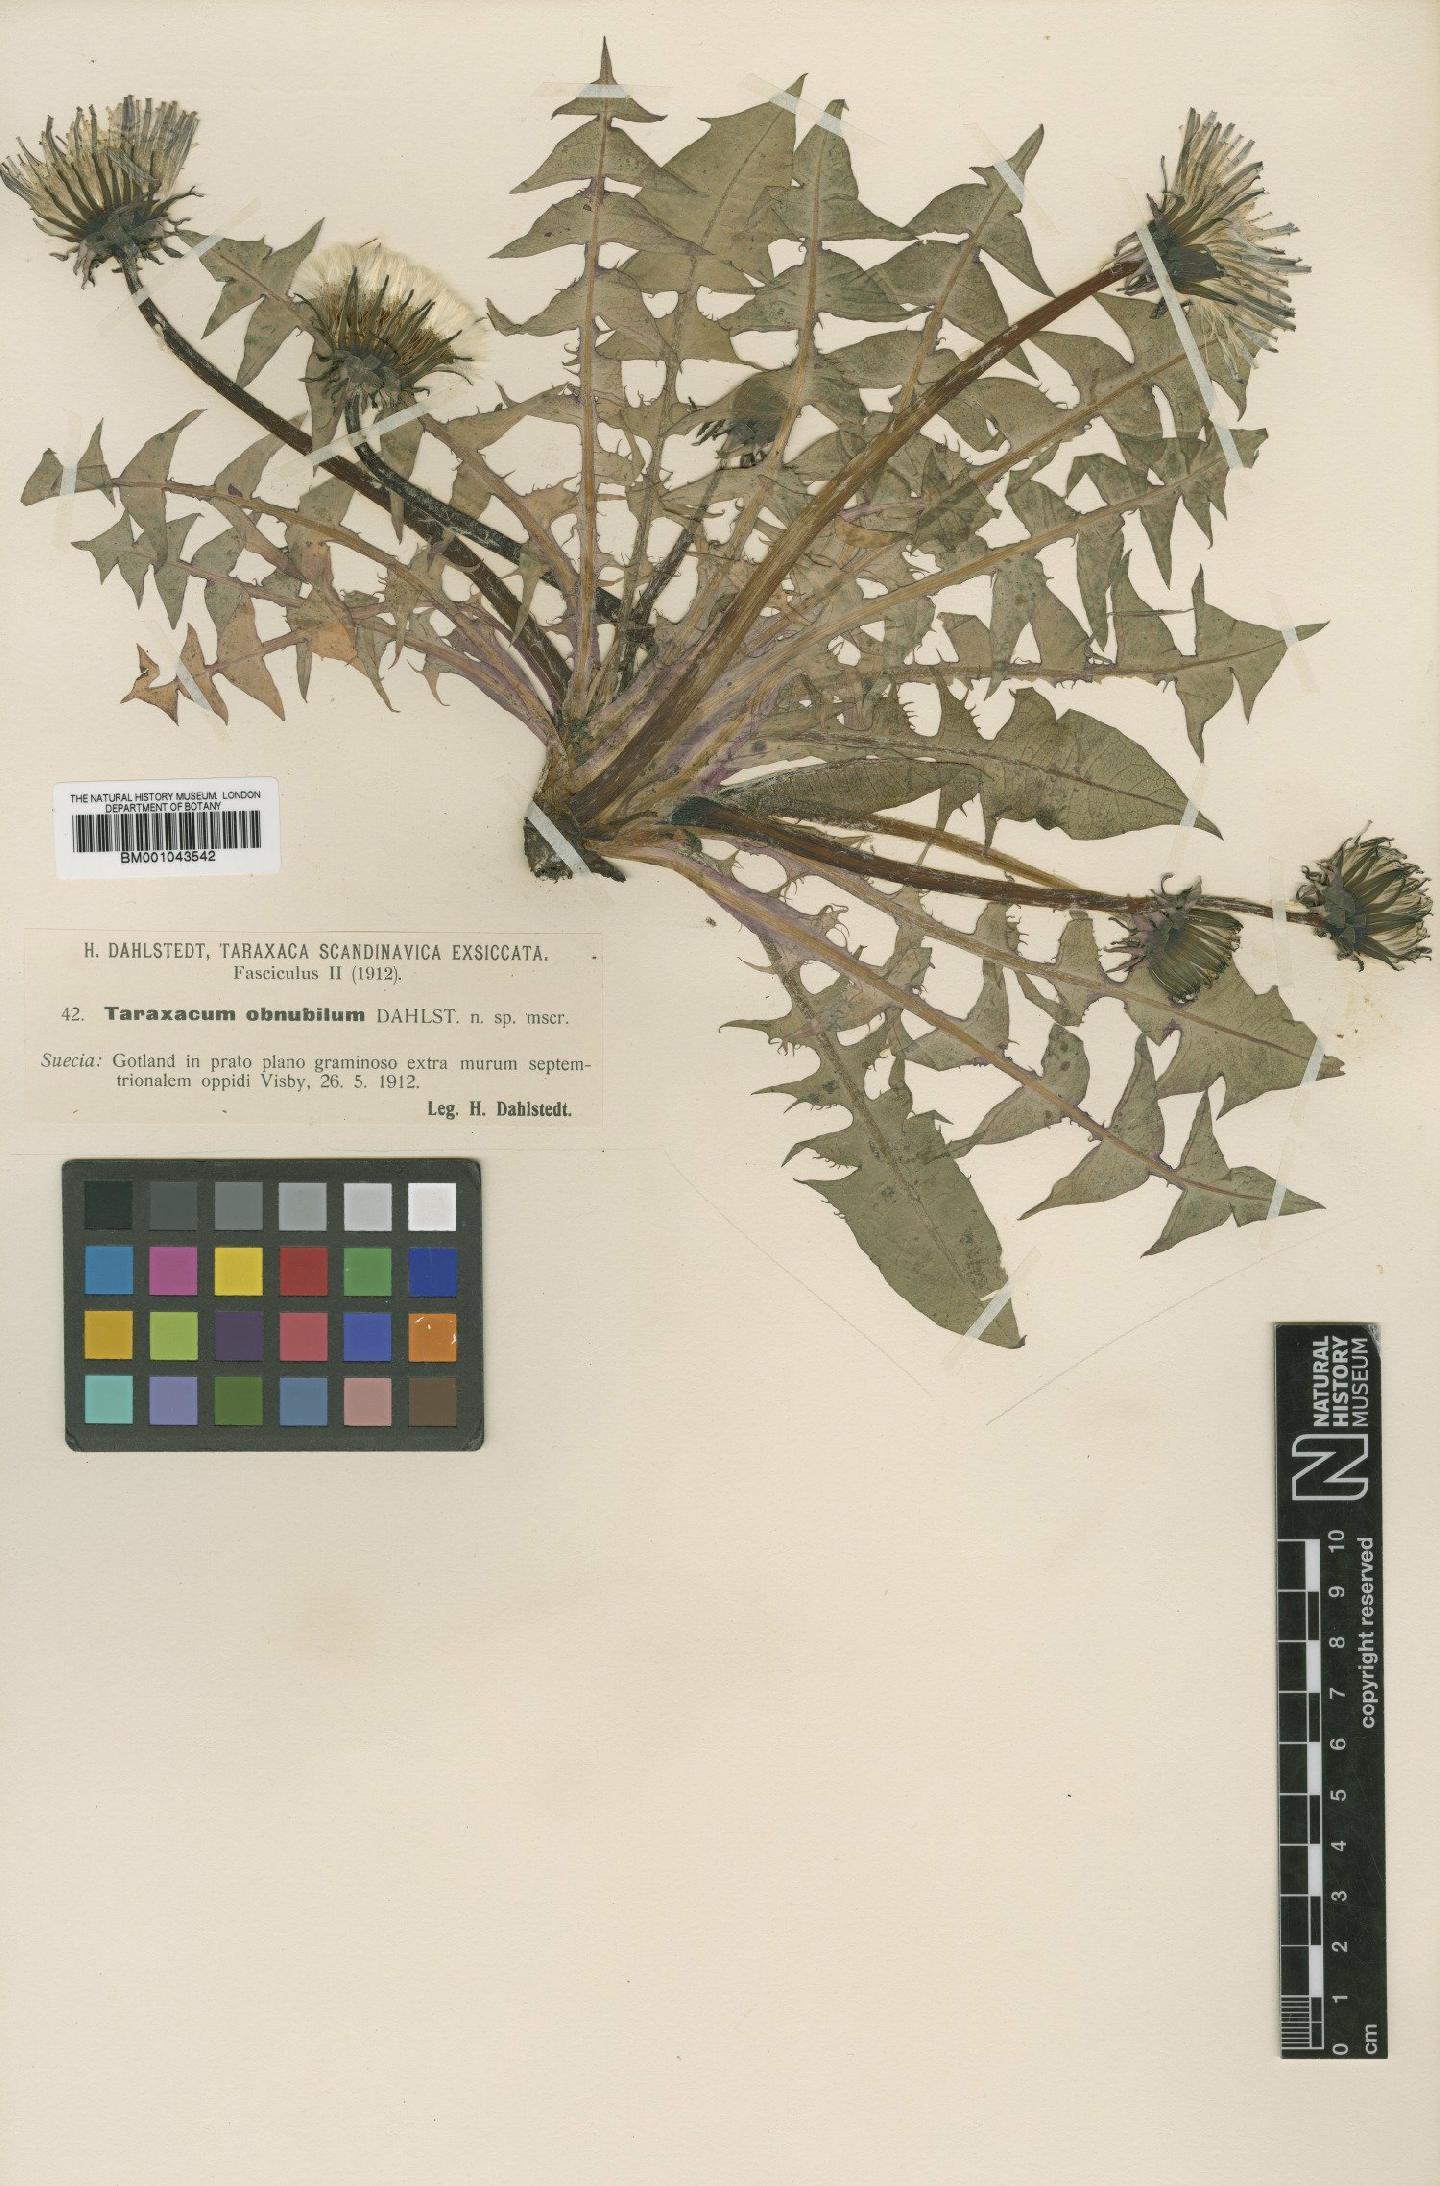 To NHMUK collection (Taraxacum obnubilum Dahlst; Type; NHMUK:ecatalogue:1999544)